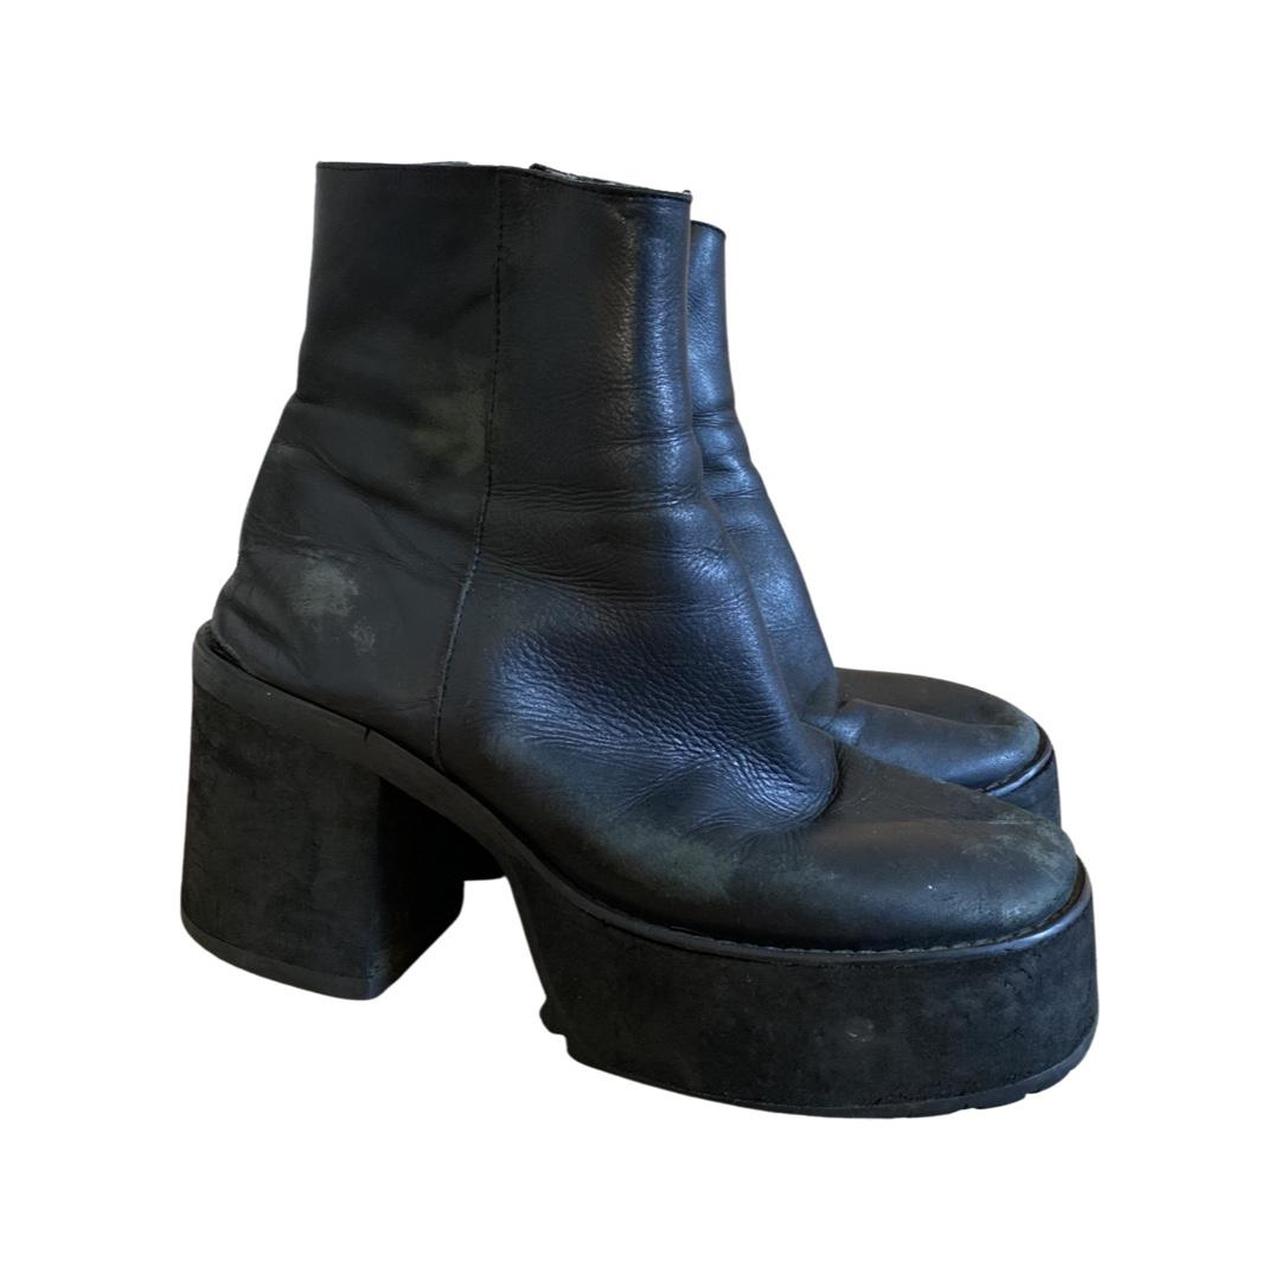 Unisex UNIF Bonnie platform ankle boots. Worn... - Depop